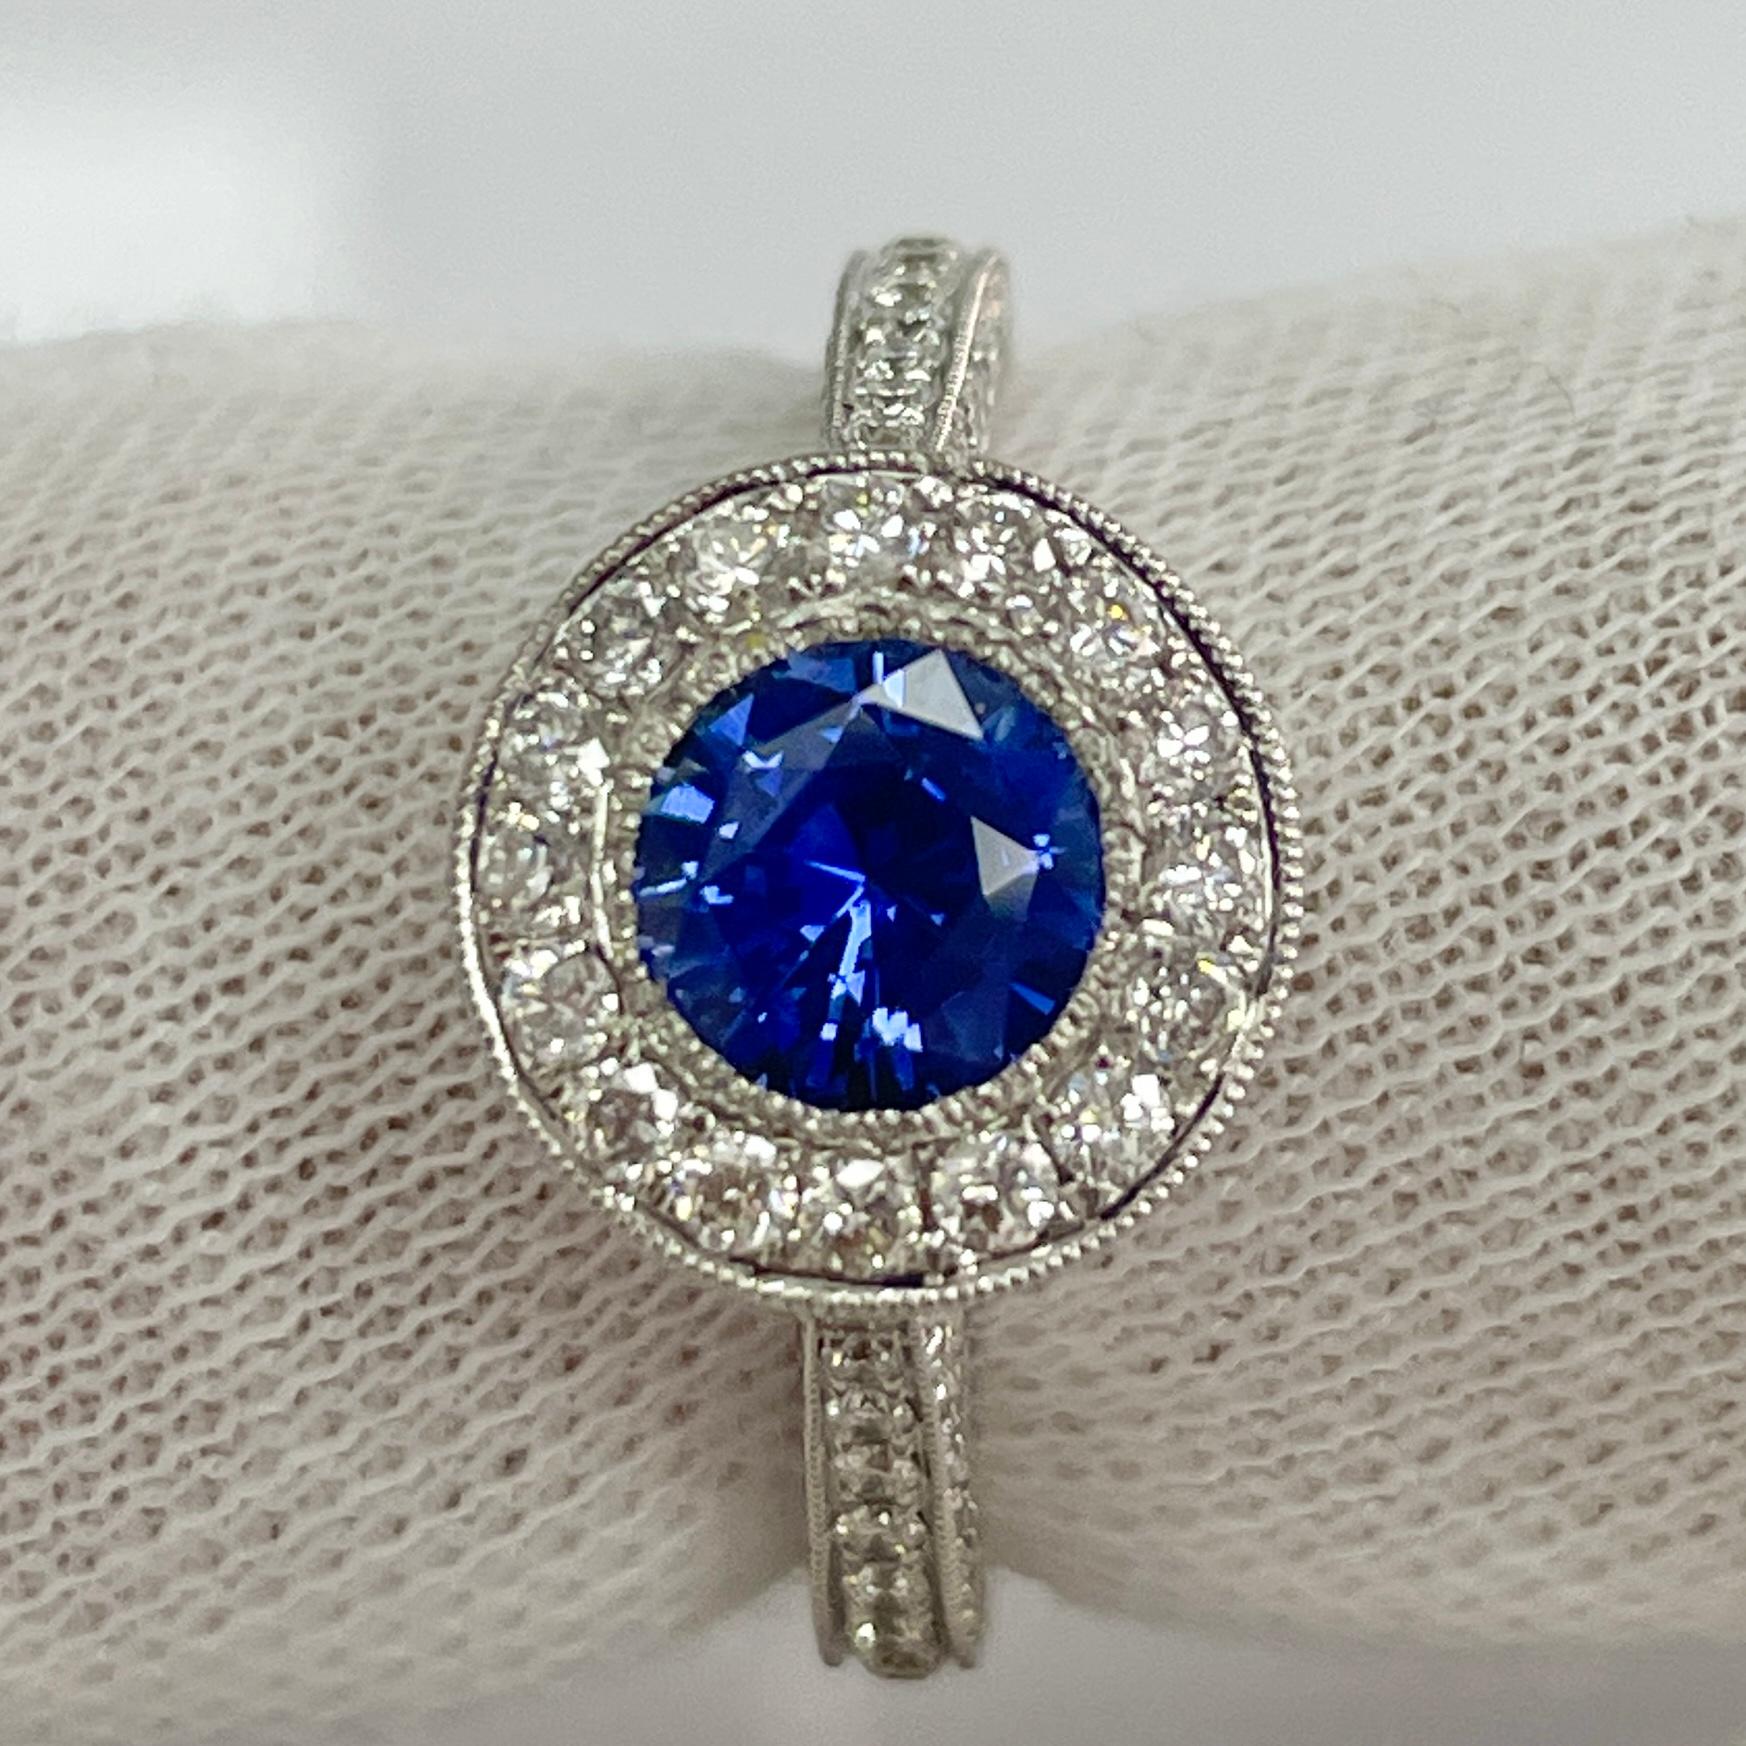 Cette bague a un saphir bleu doux mais très saturé et vivant. Cette bague est très élégante avec son or blanc 18 carats et ses 1,05 carats de diamants blancs brillants.